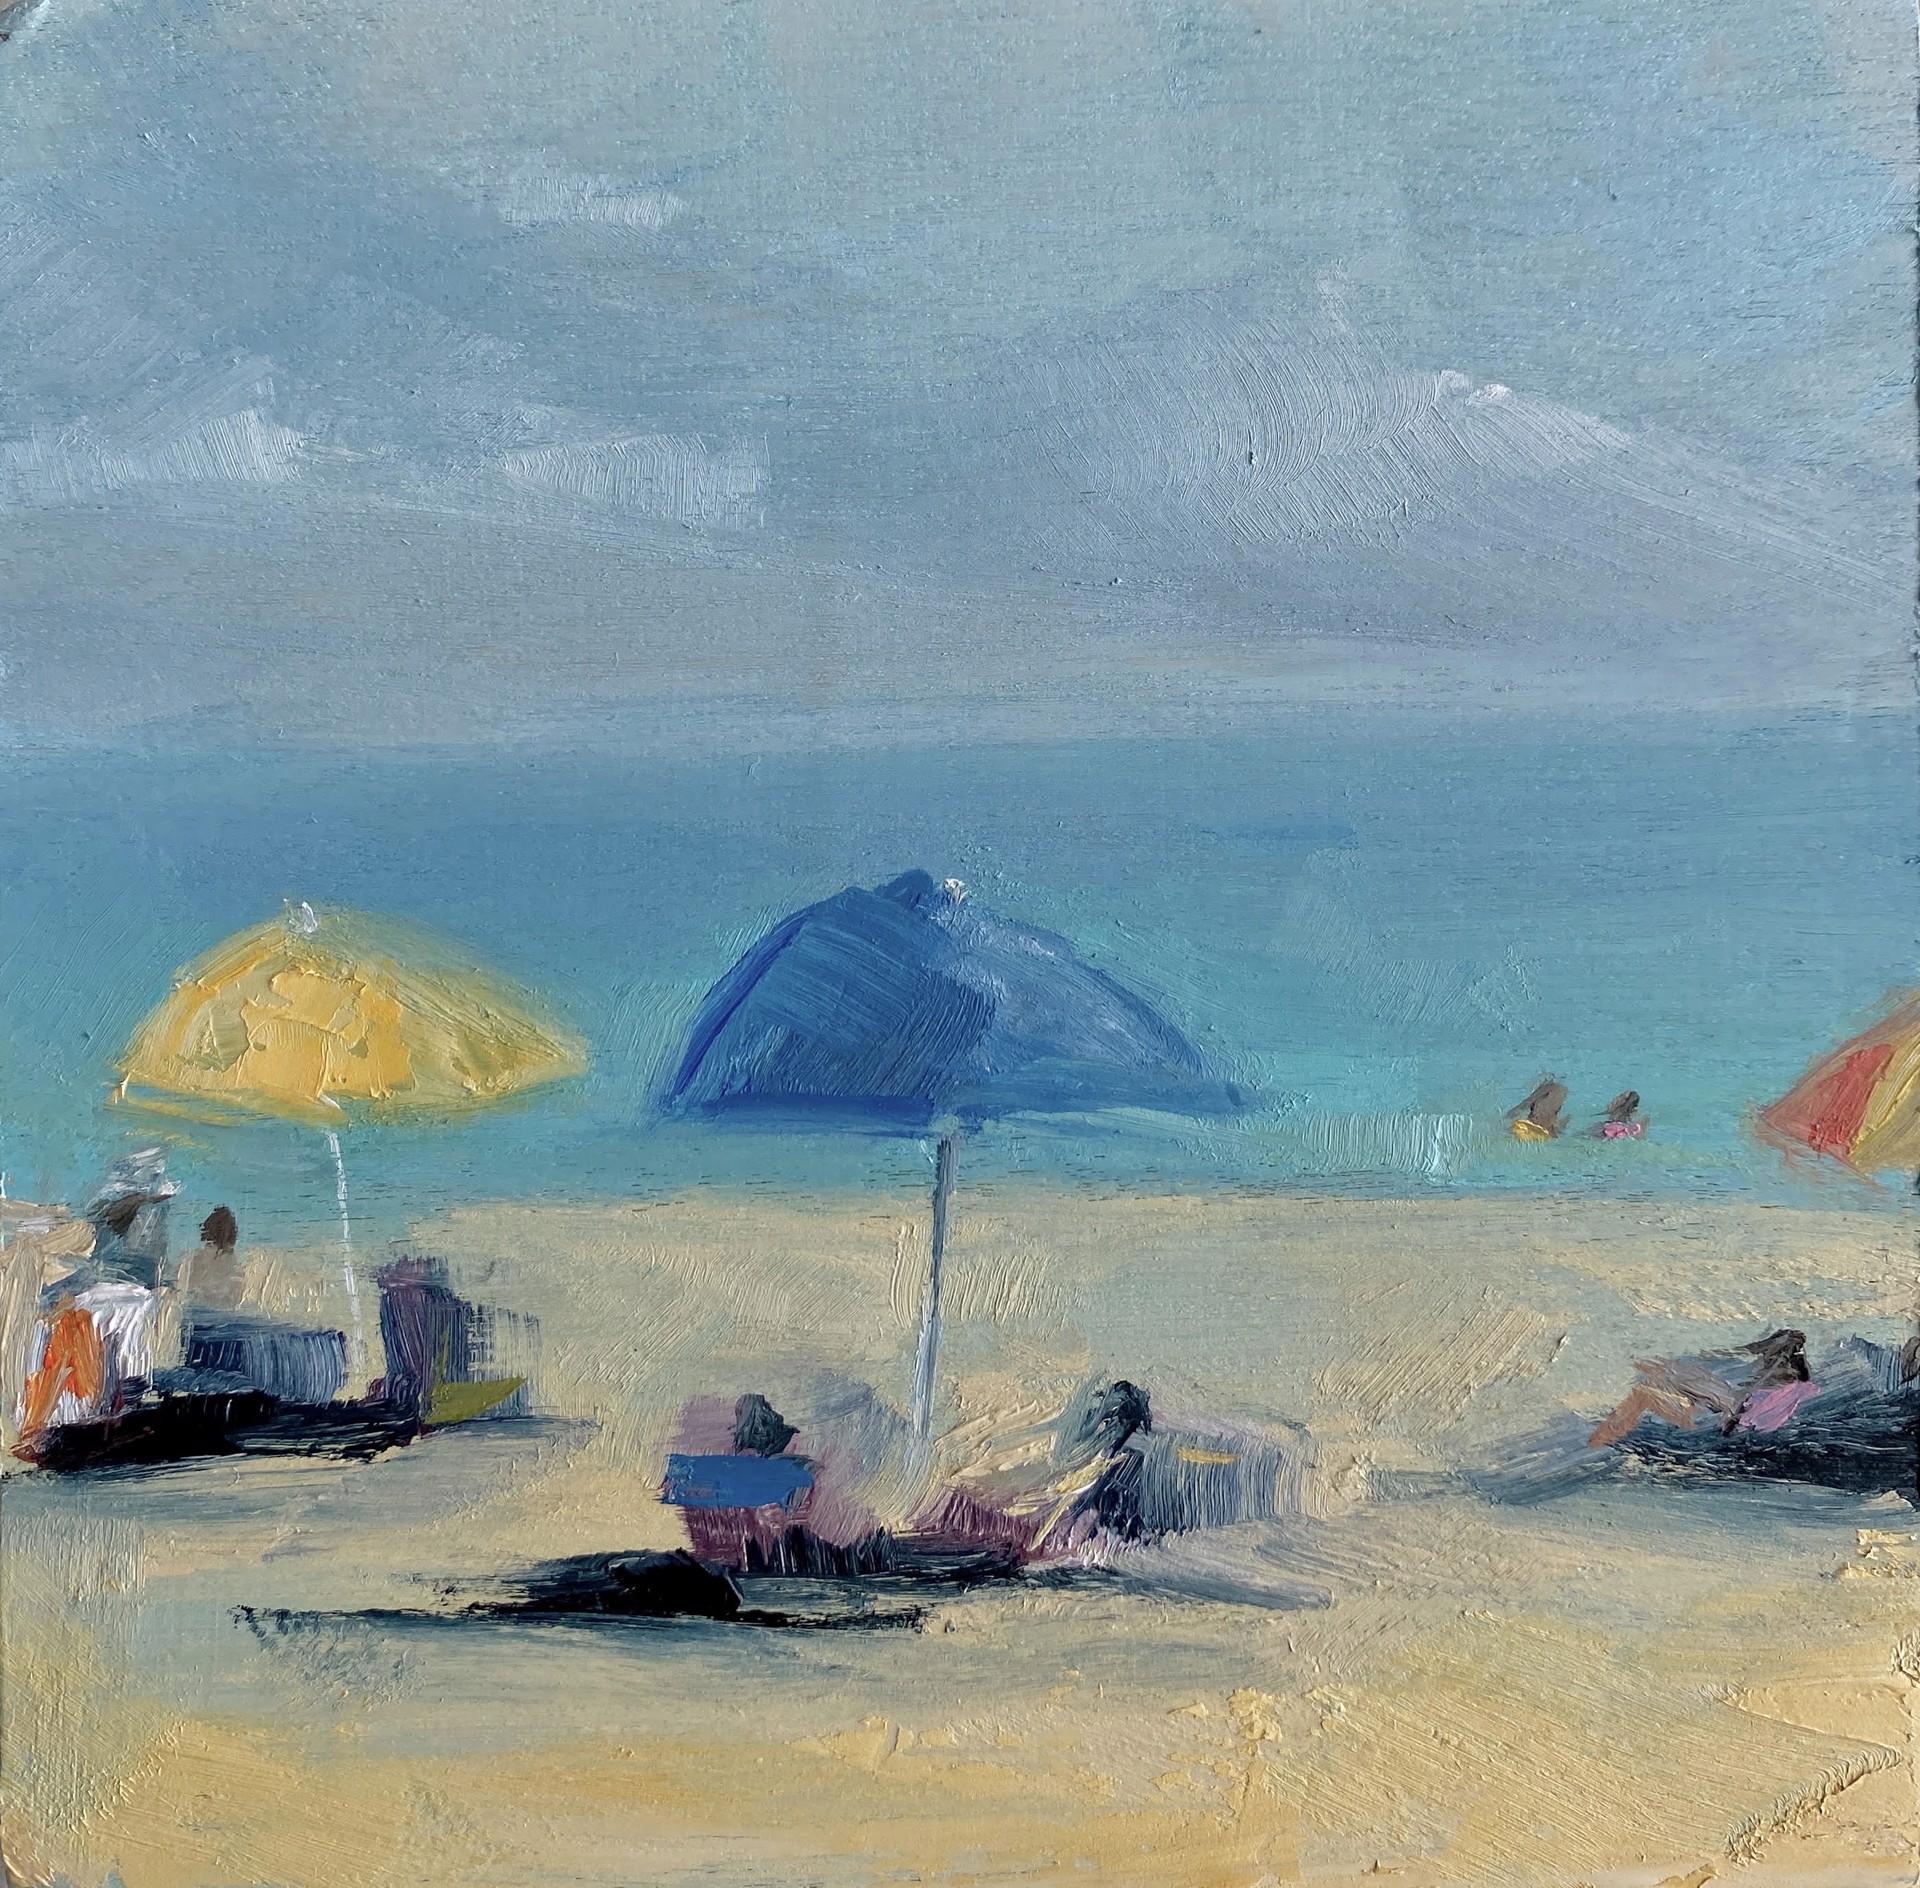 Breezy Summer Days by Leigh Ann Van Fossan